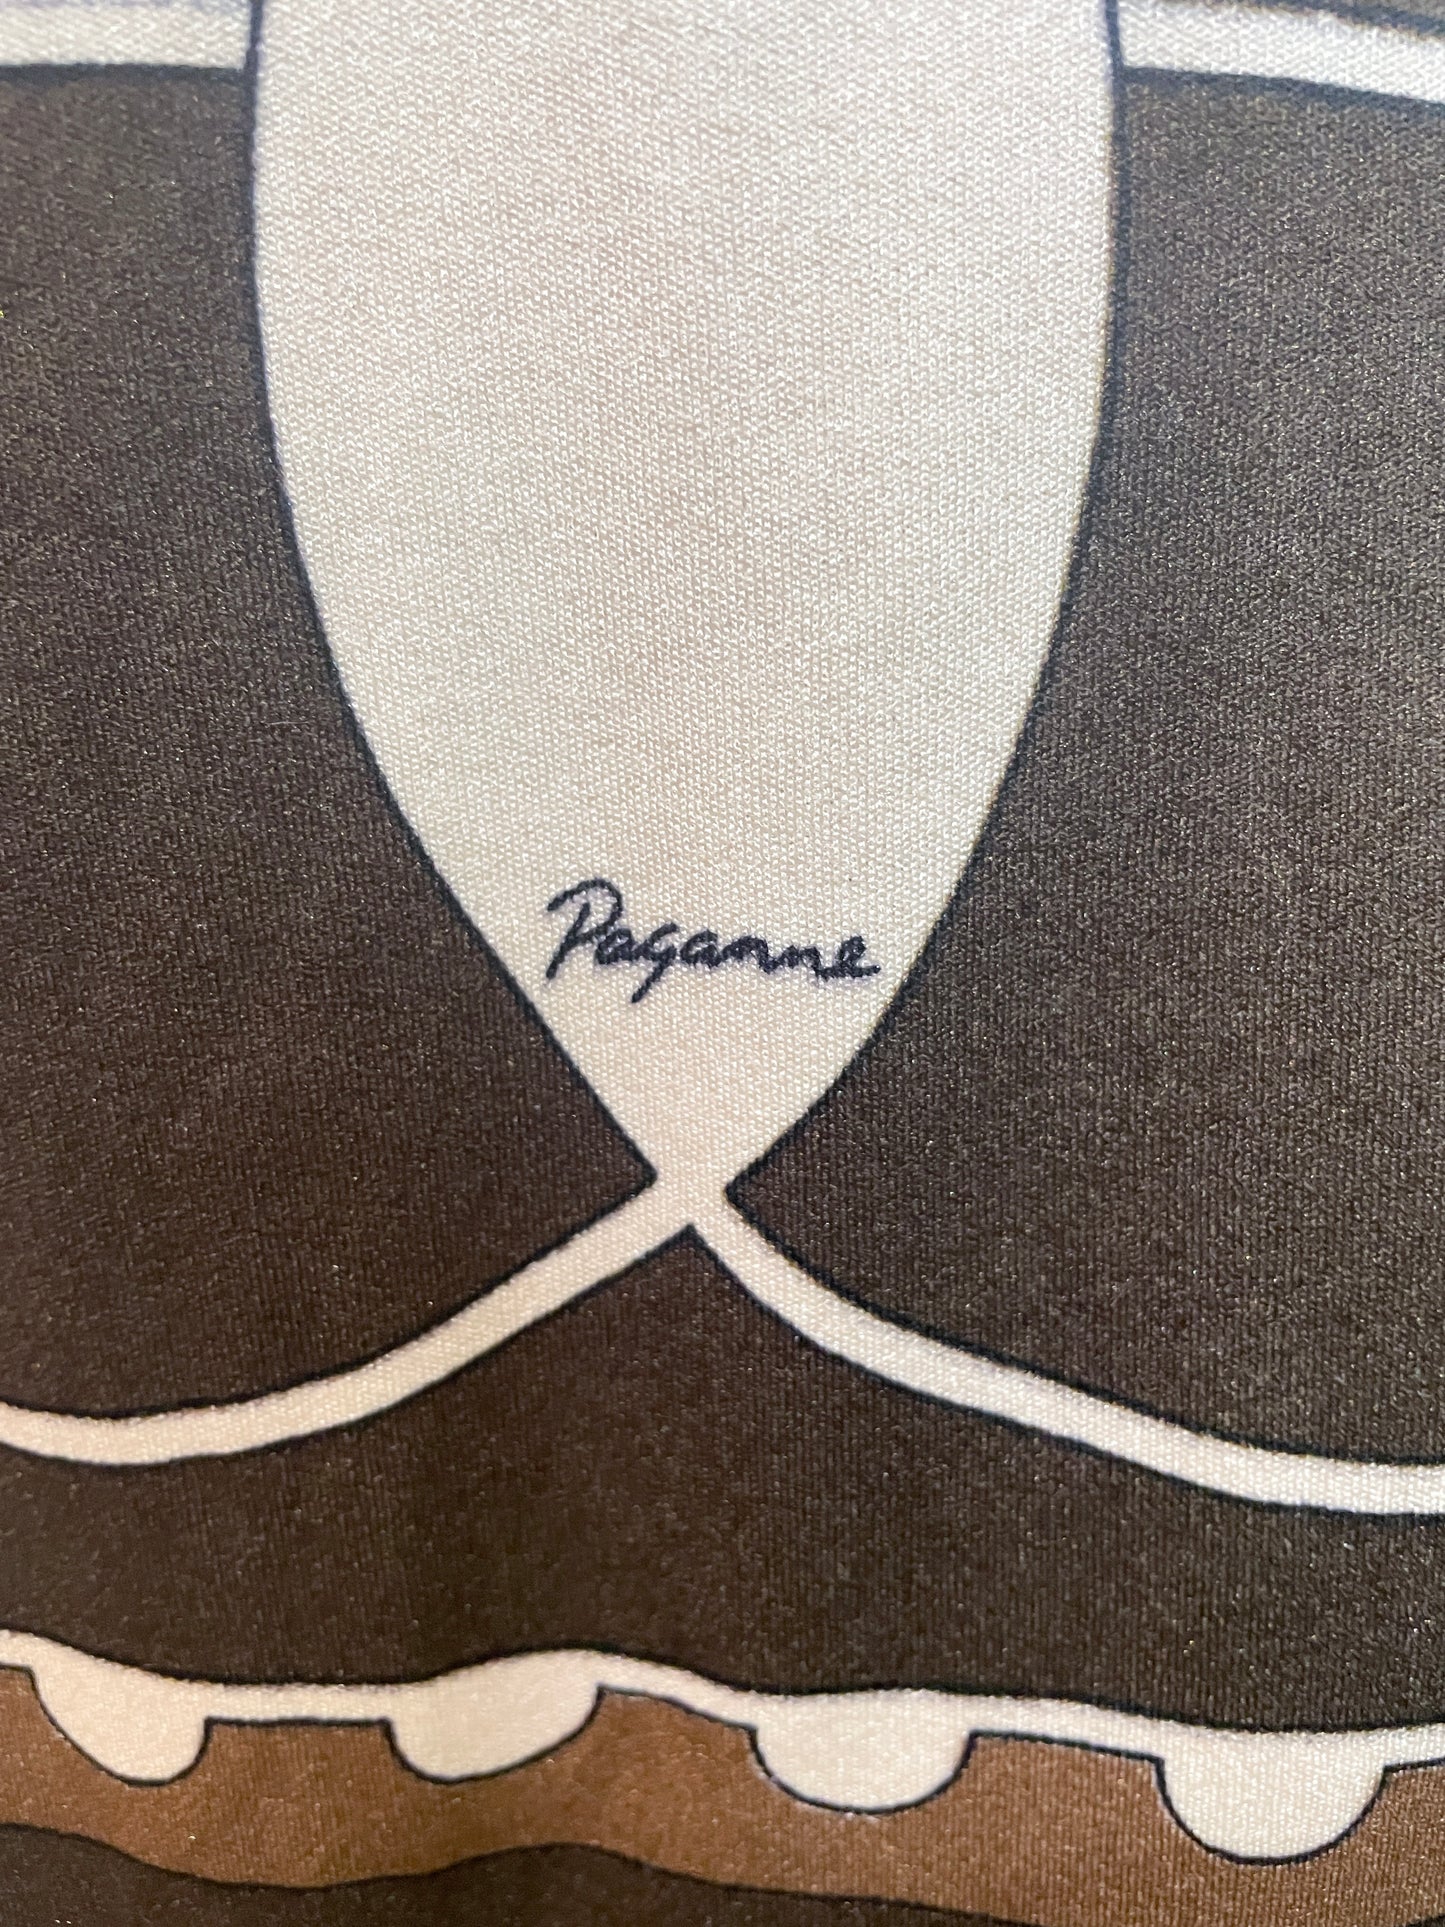 1960s Paganne by Gene Berk Mod Jersey Dress